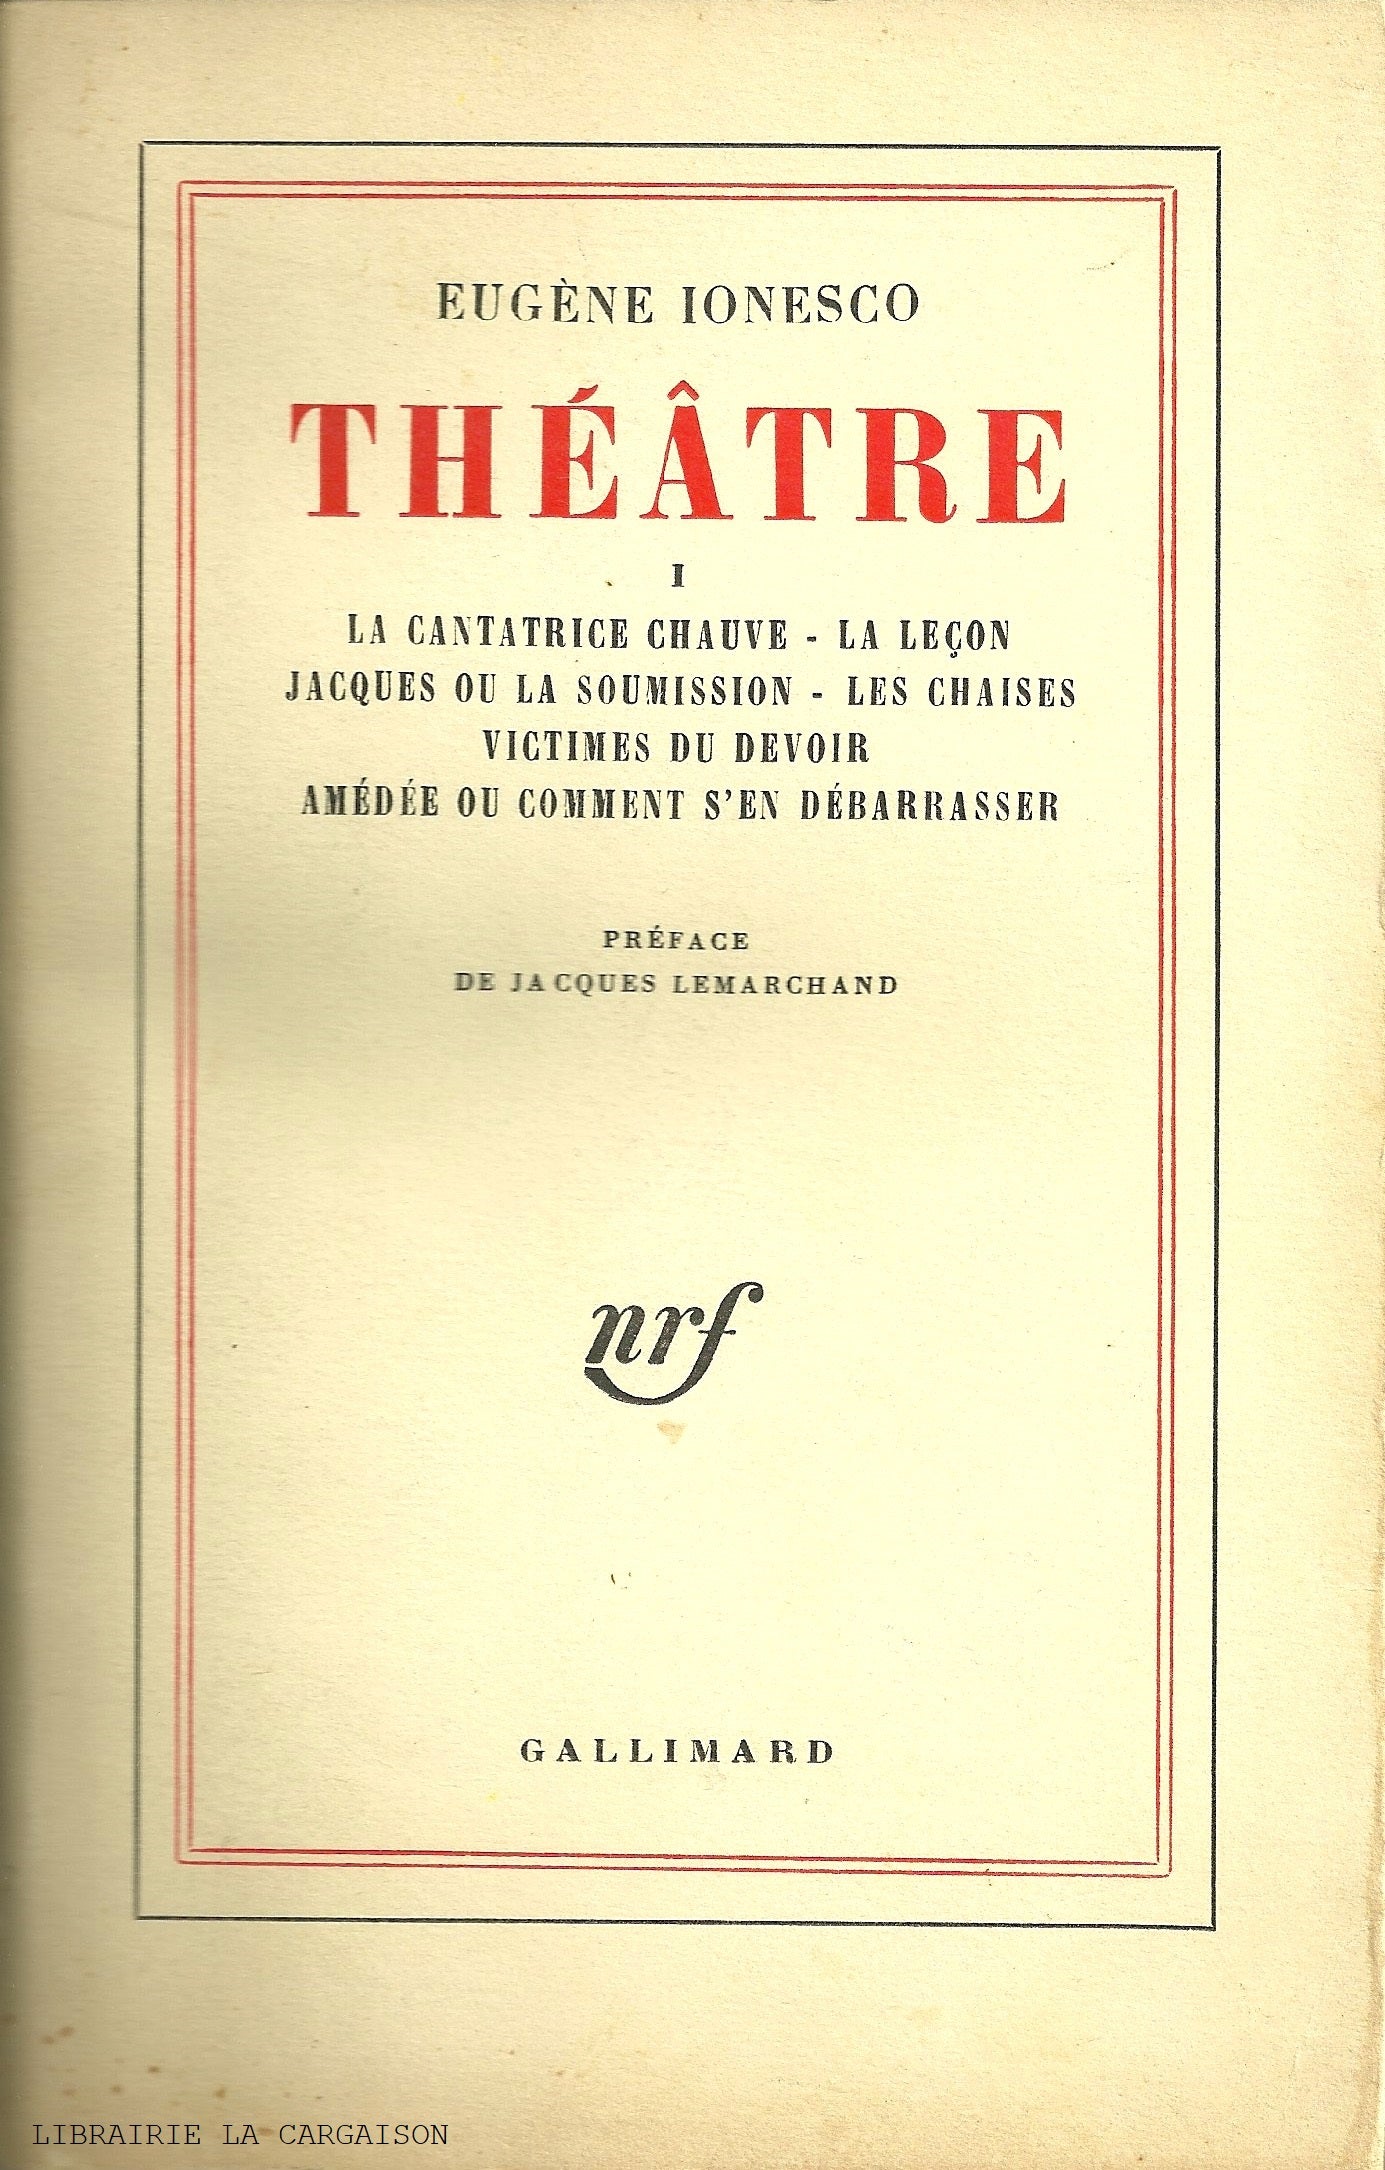 IONESCO, EUGENE. Théâtre - Volume 01